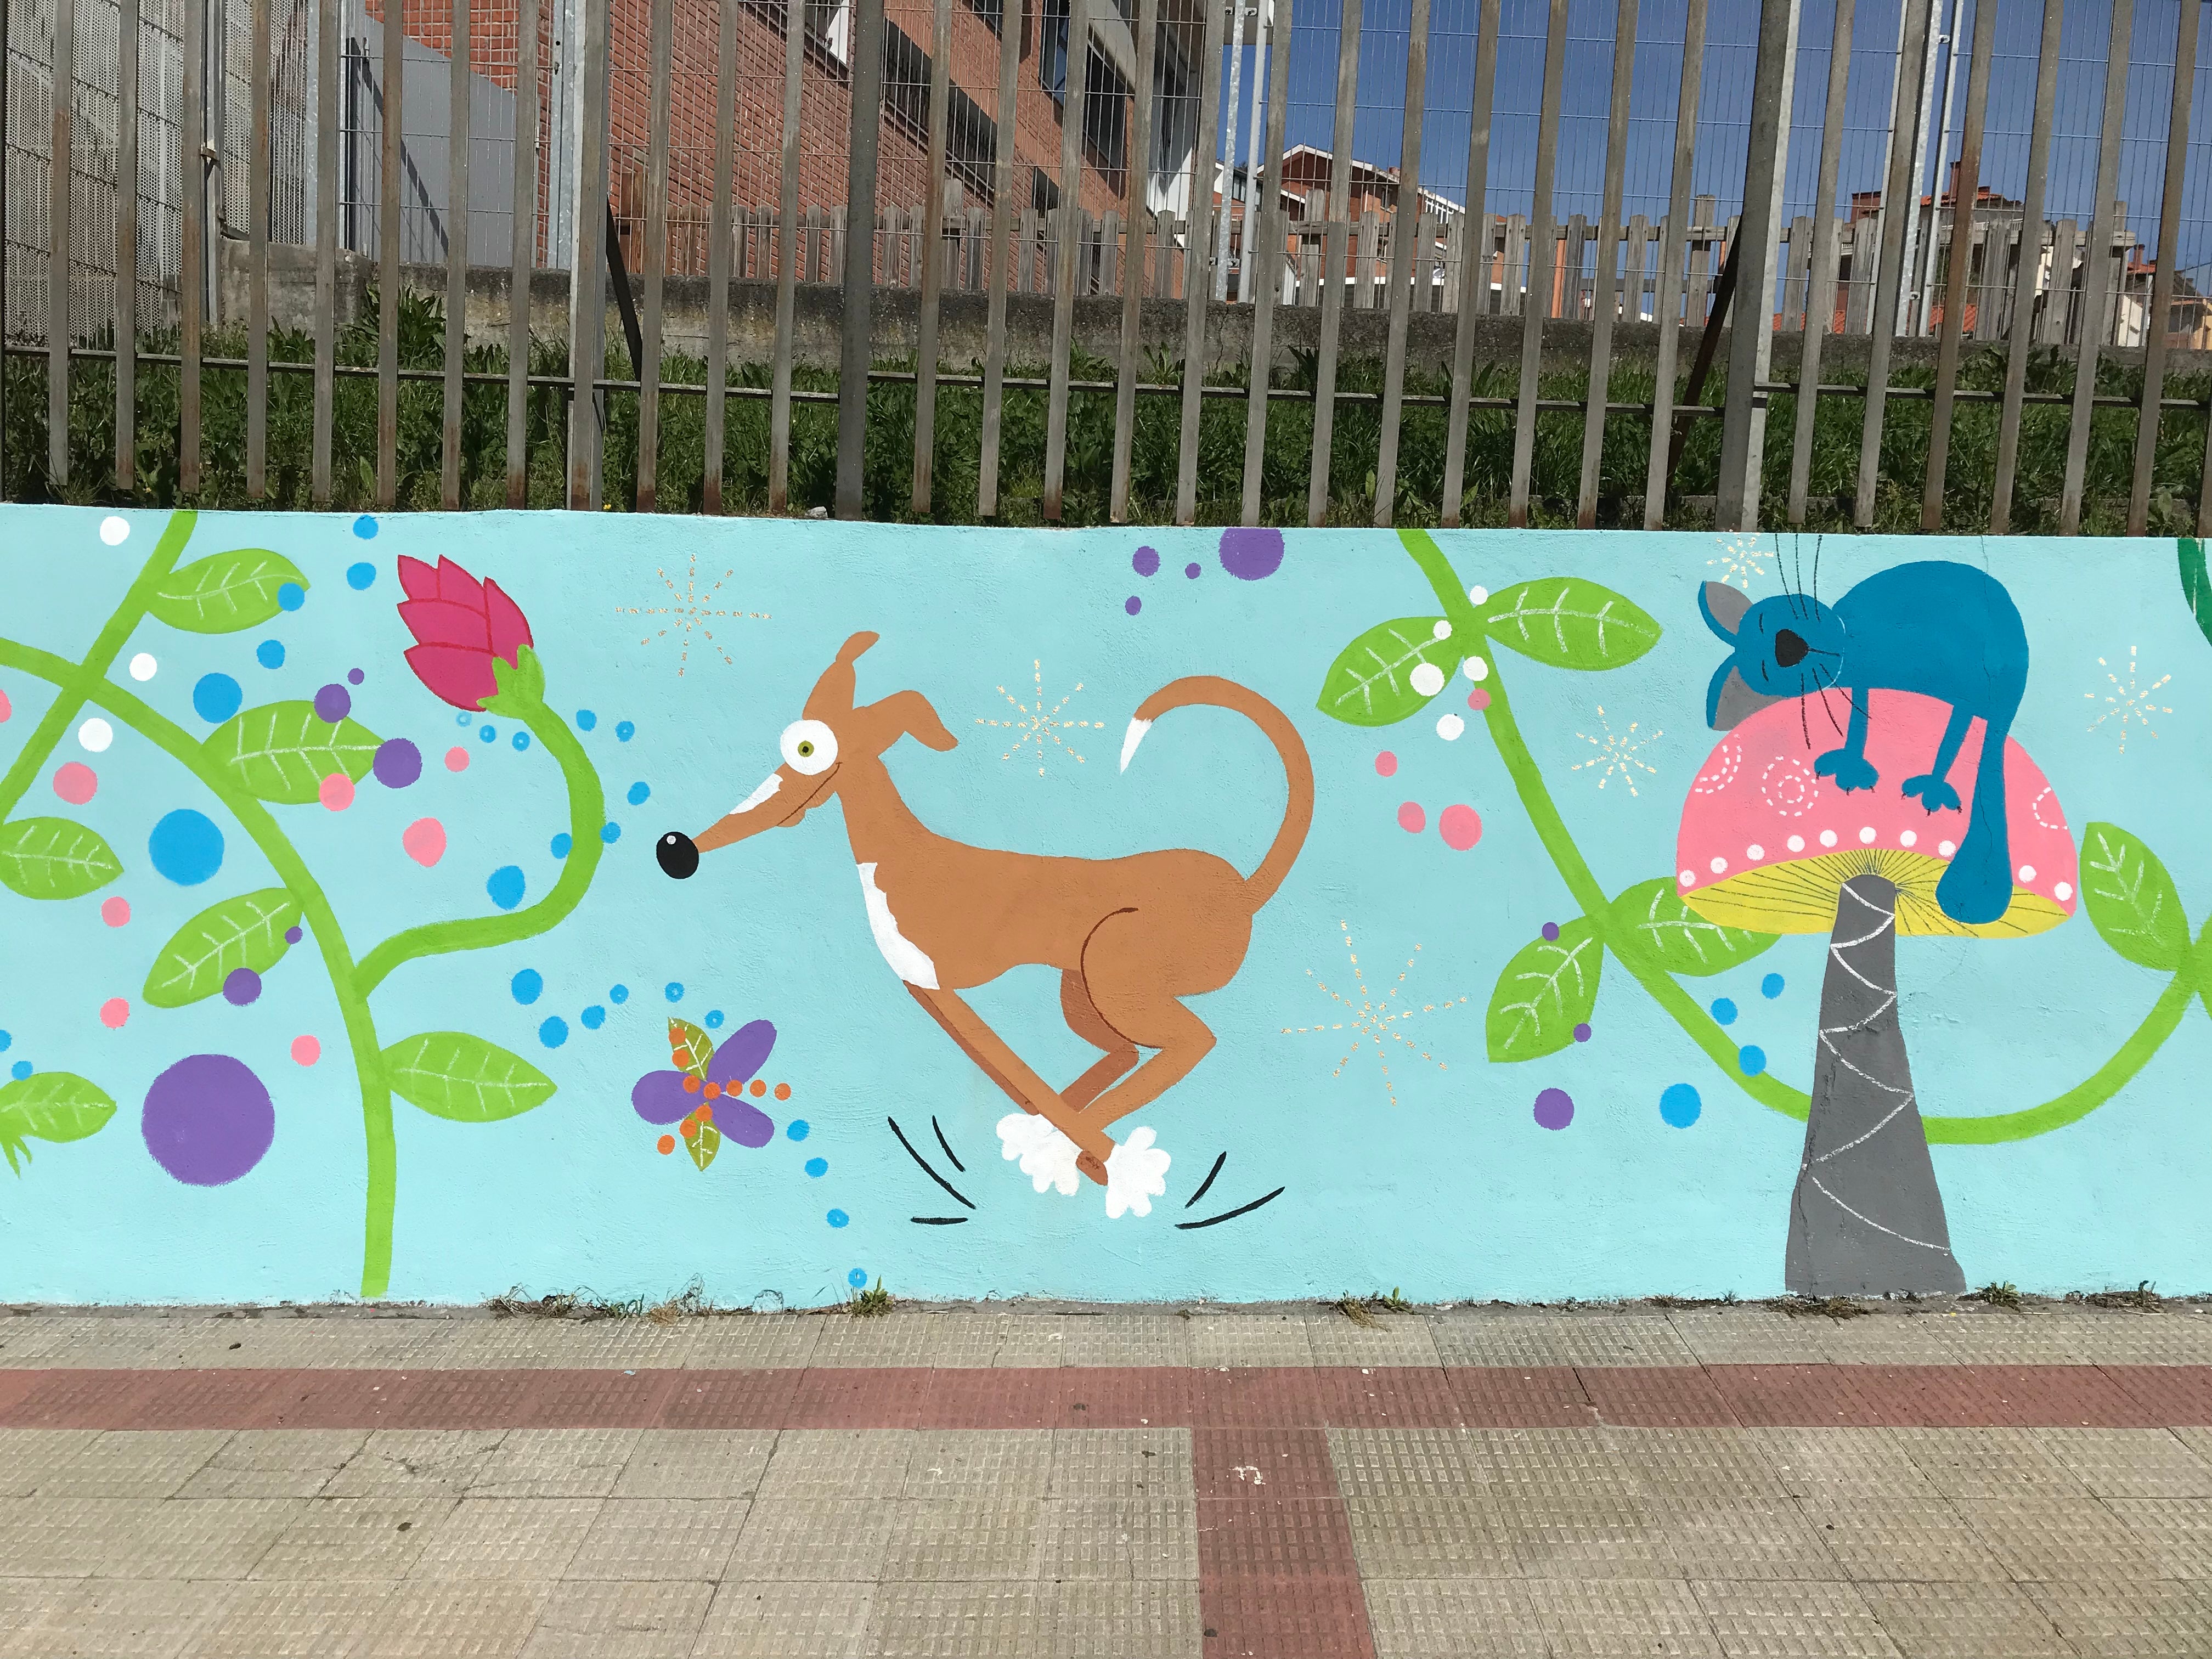 Perro, Dog, mural, Street art, colegio, mural 